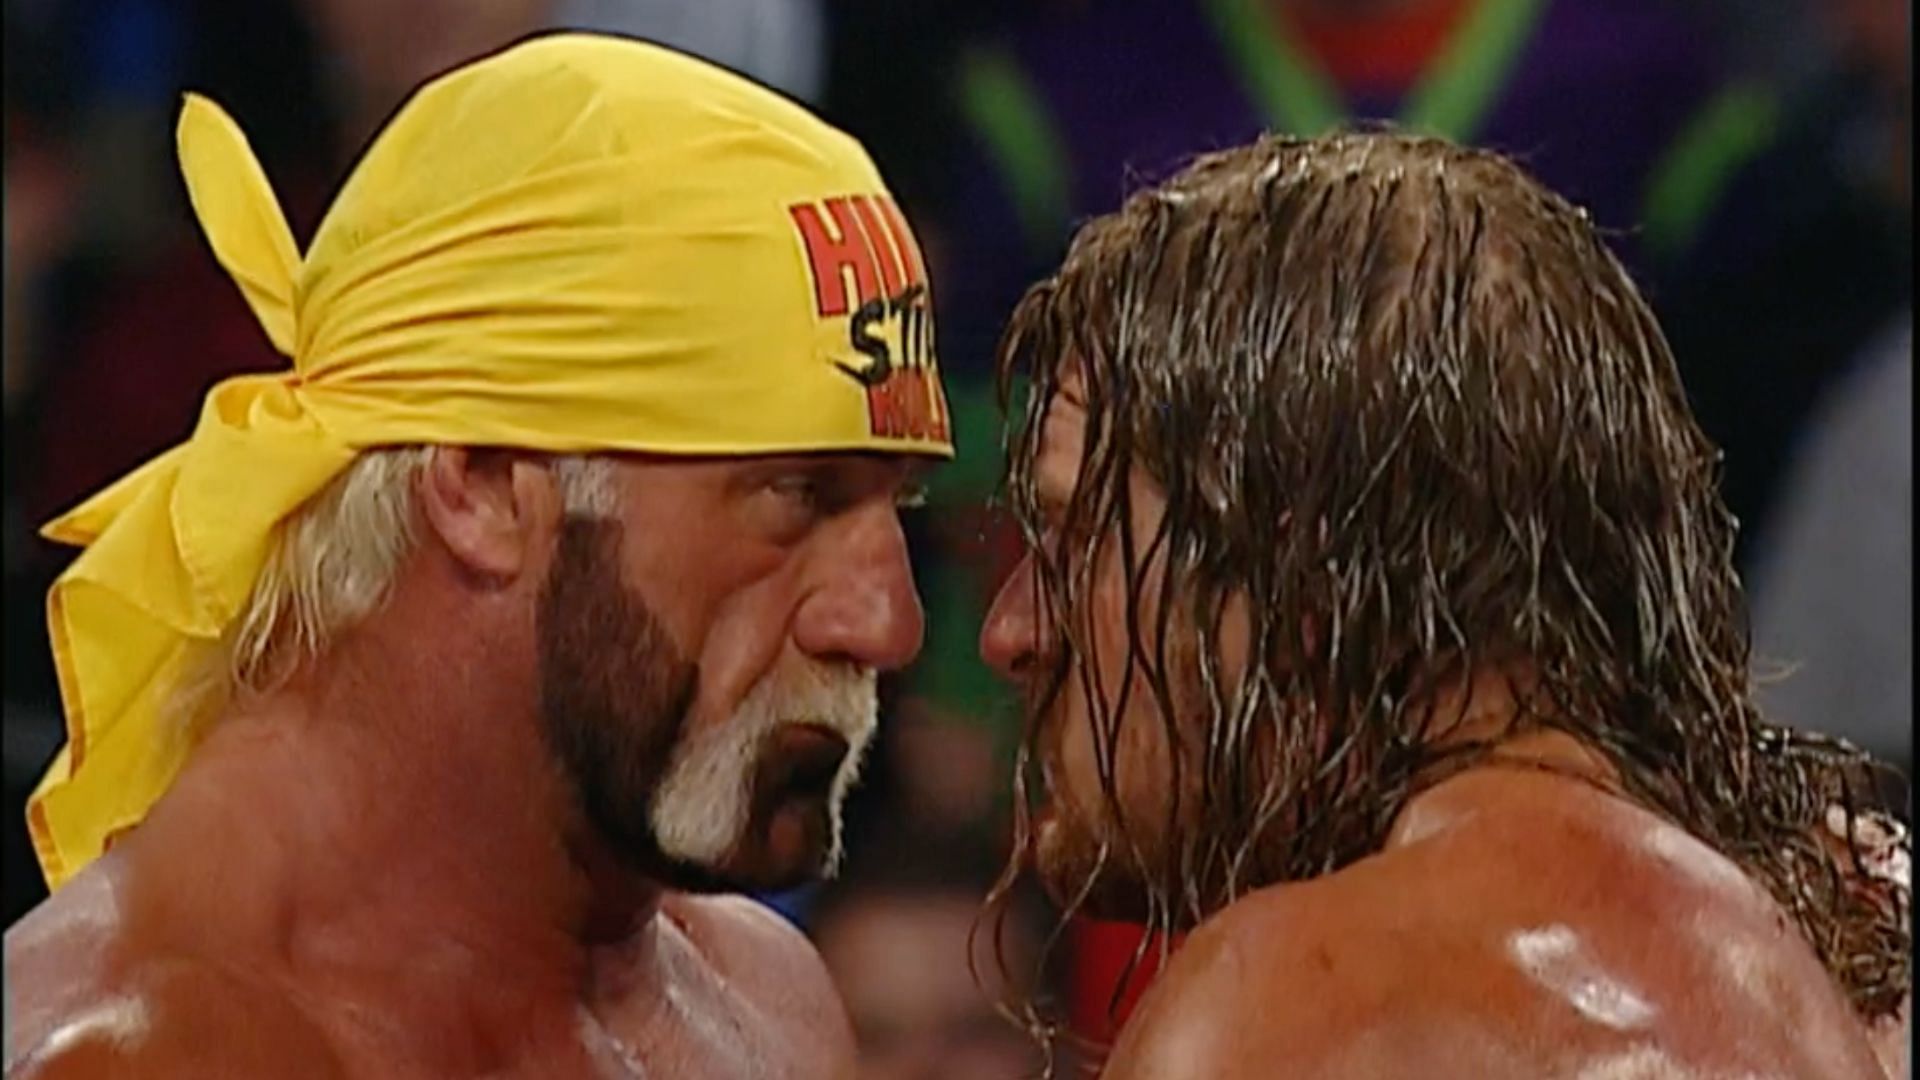 Hulk Hogan and Triple H at WWE Backlash 2002.